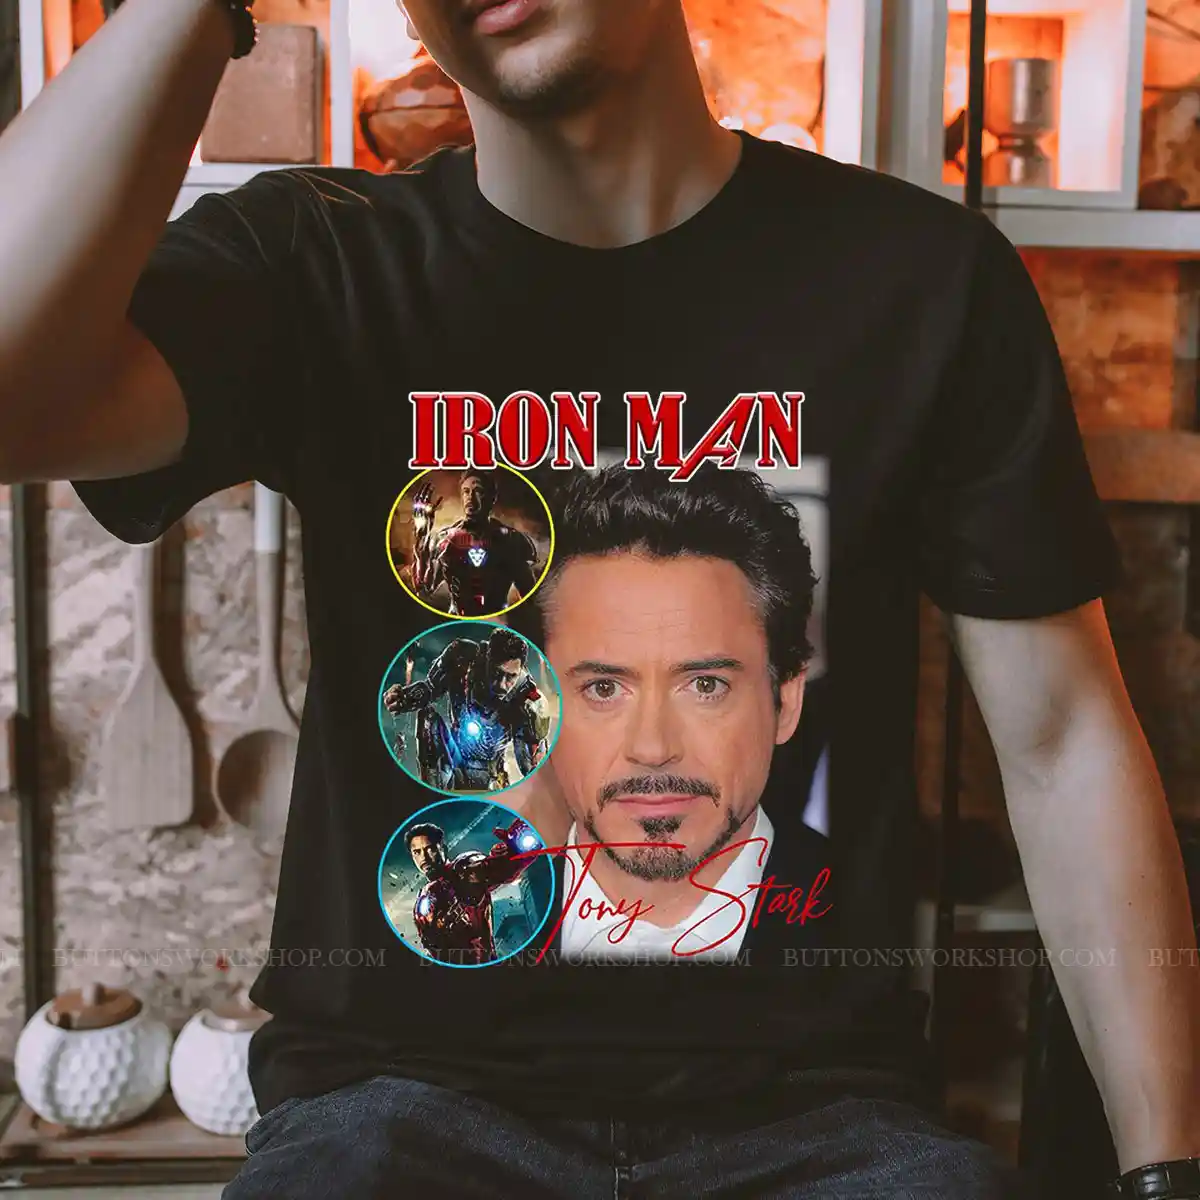 Tony Stark Tshirt Unisex Tshirt